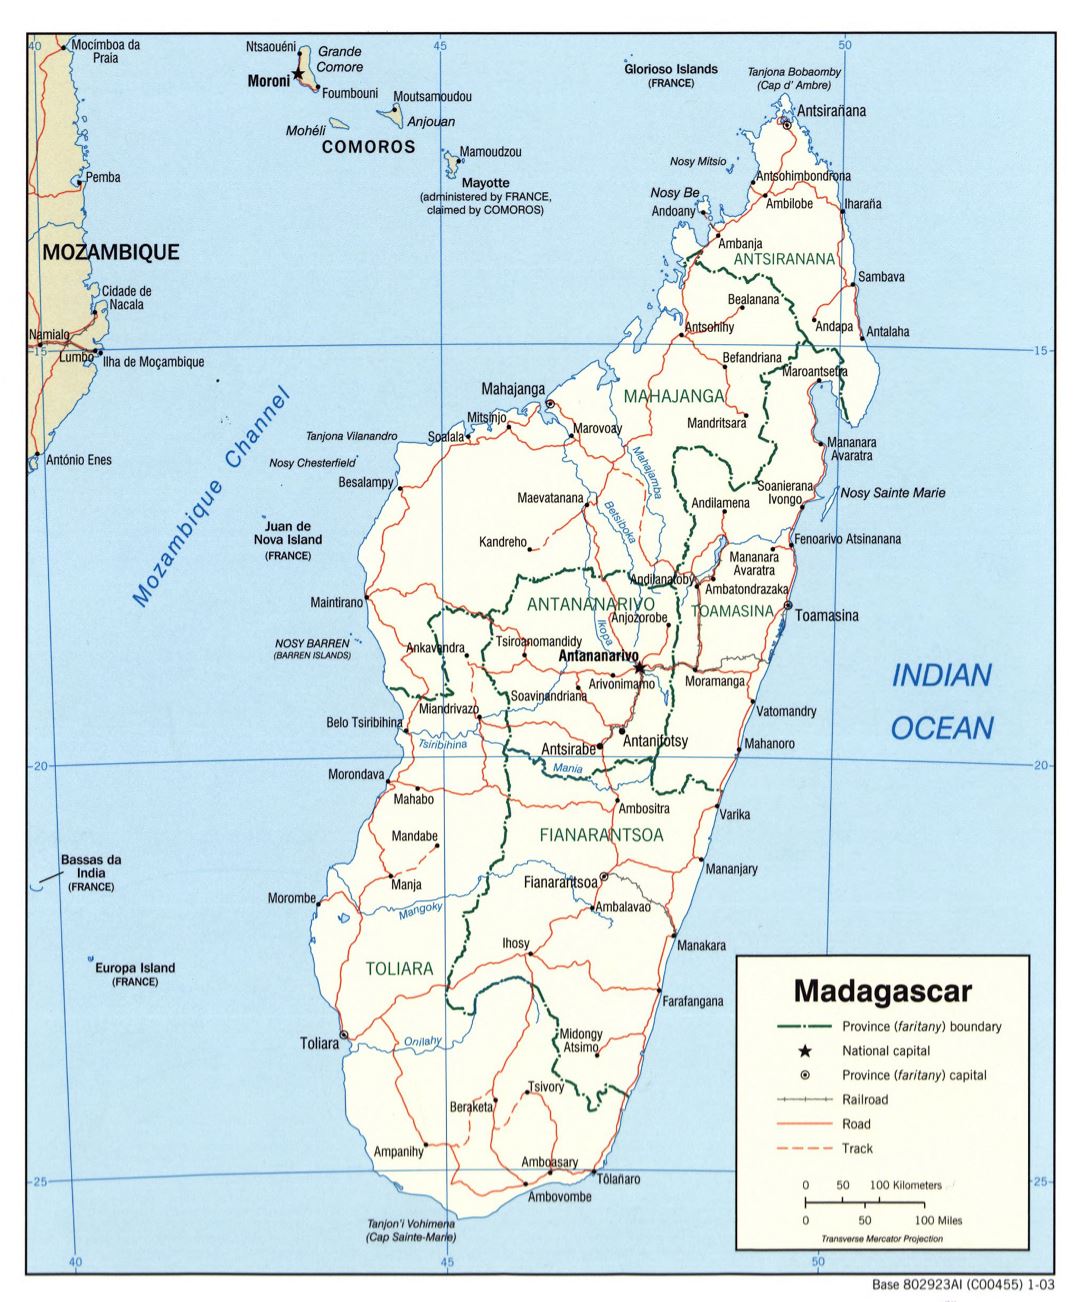 Большая политическая и административная карта Мадагаскара с дорогами, железными дорогами и городами - 2003